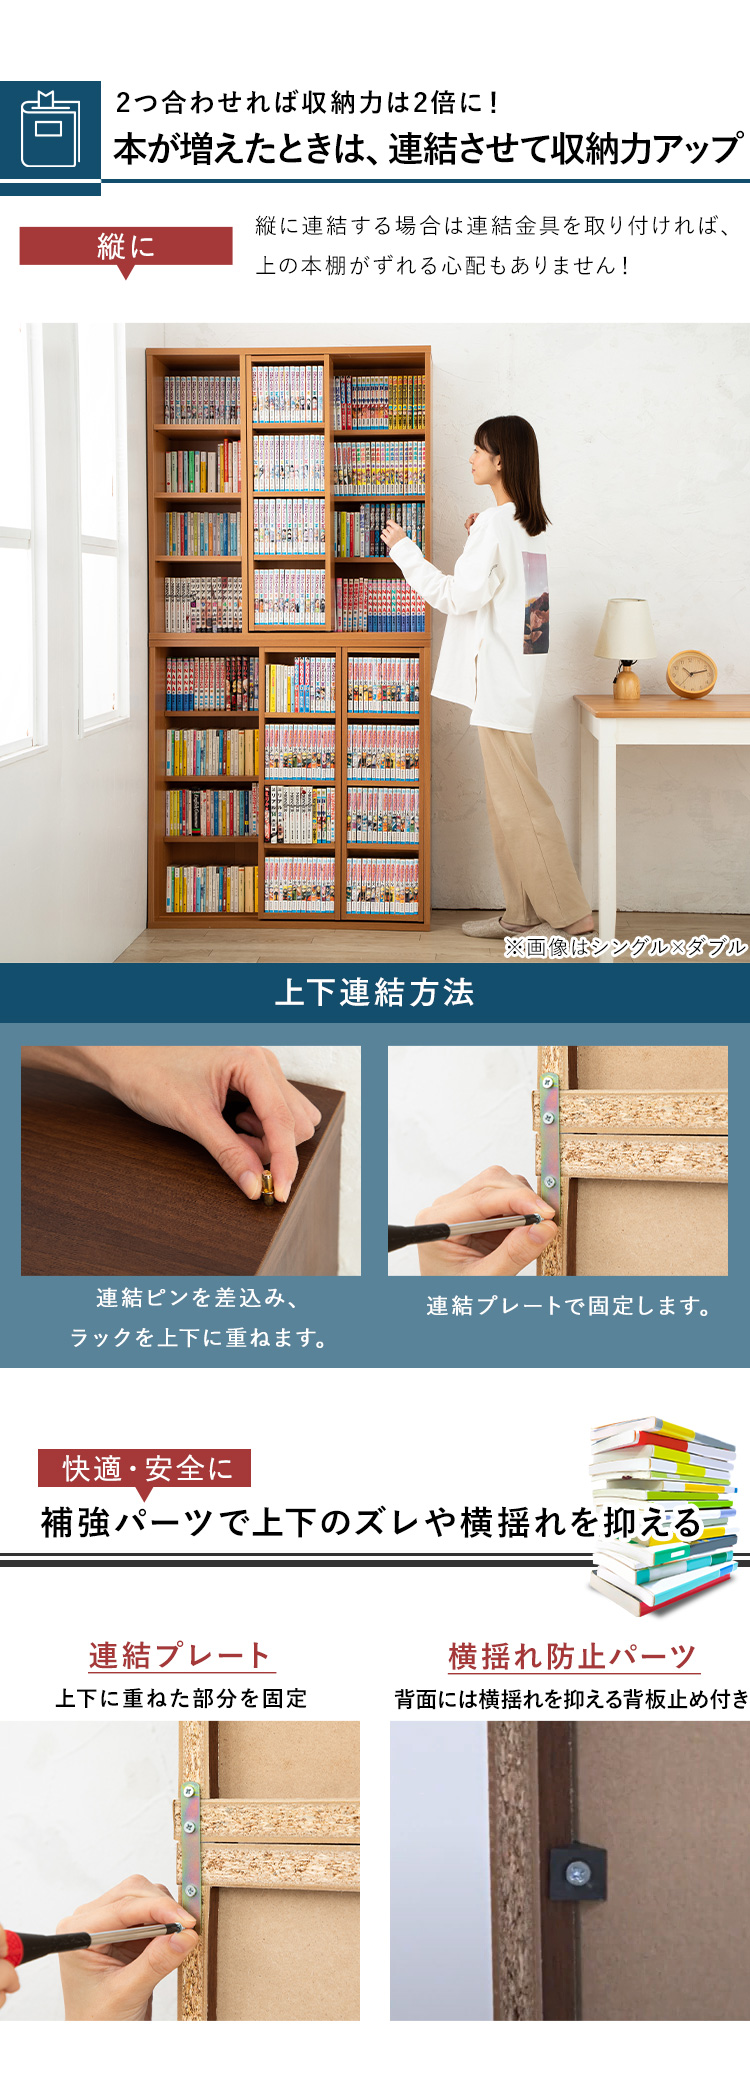 スライド式本棚 - Amazon.co.jp